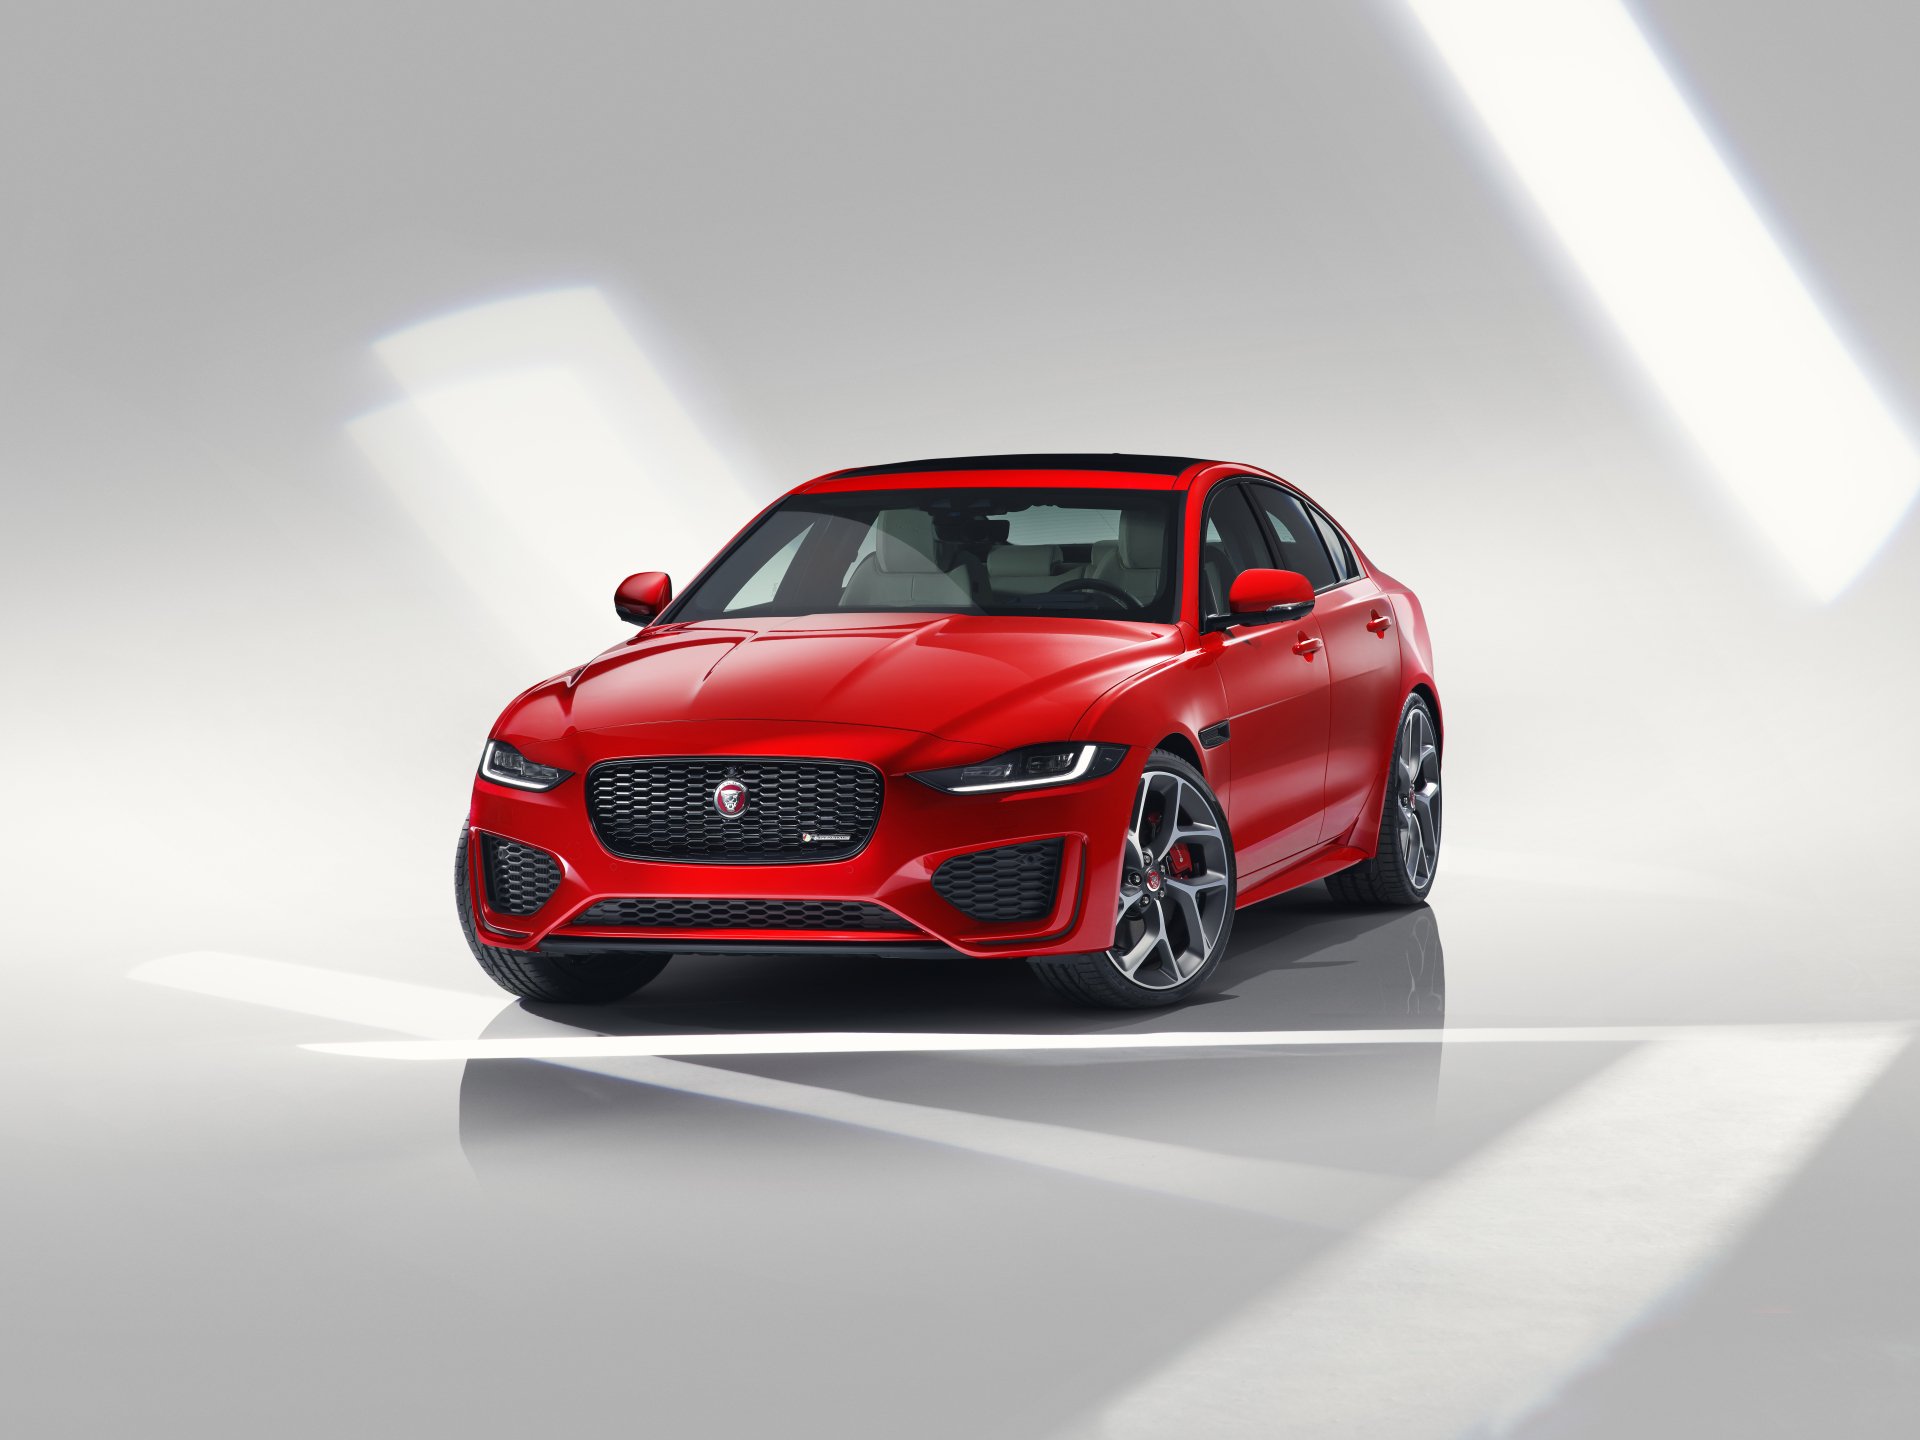 Red Jaguar Car Wallpaper Hd